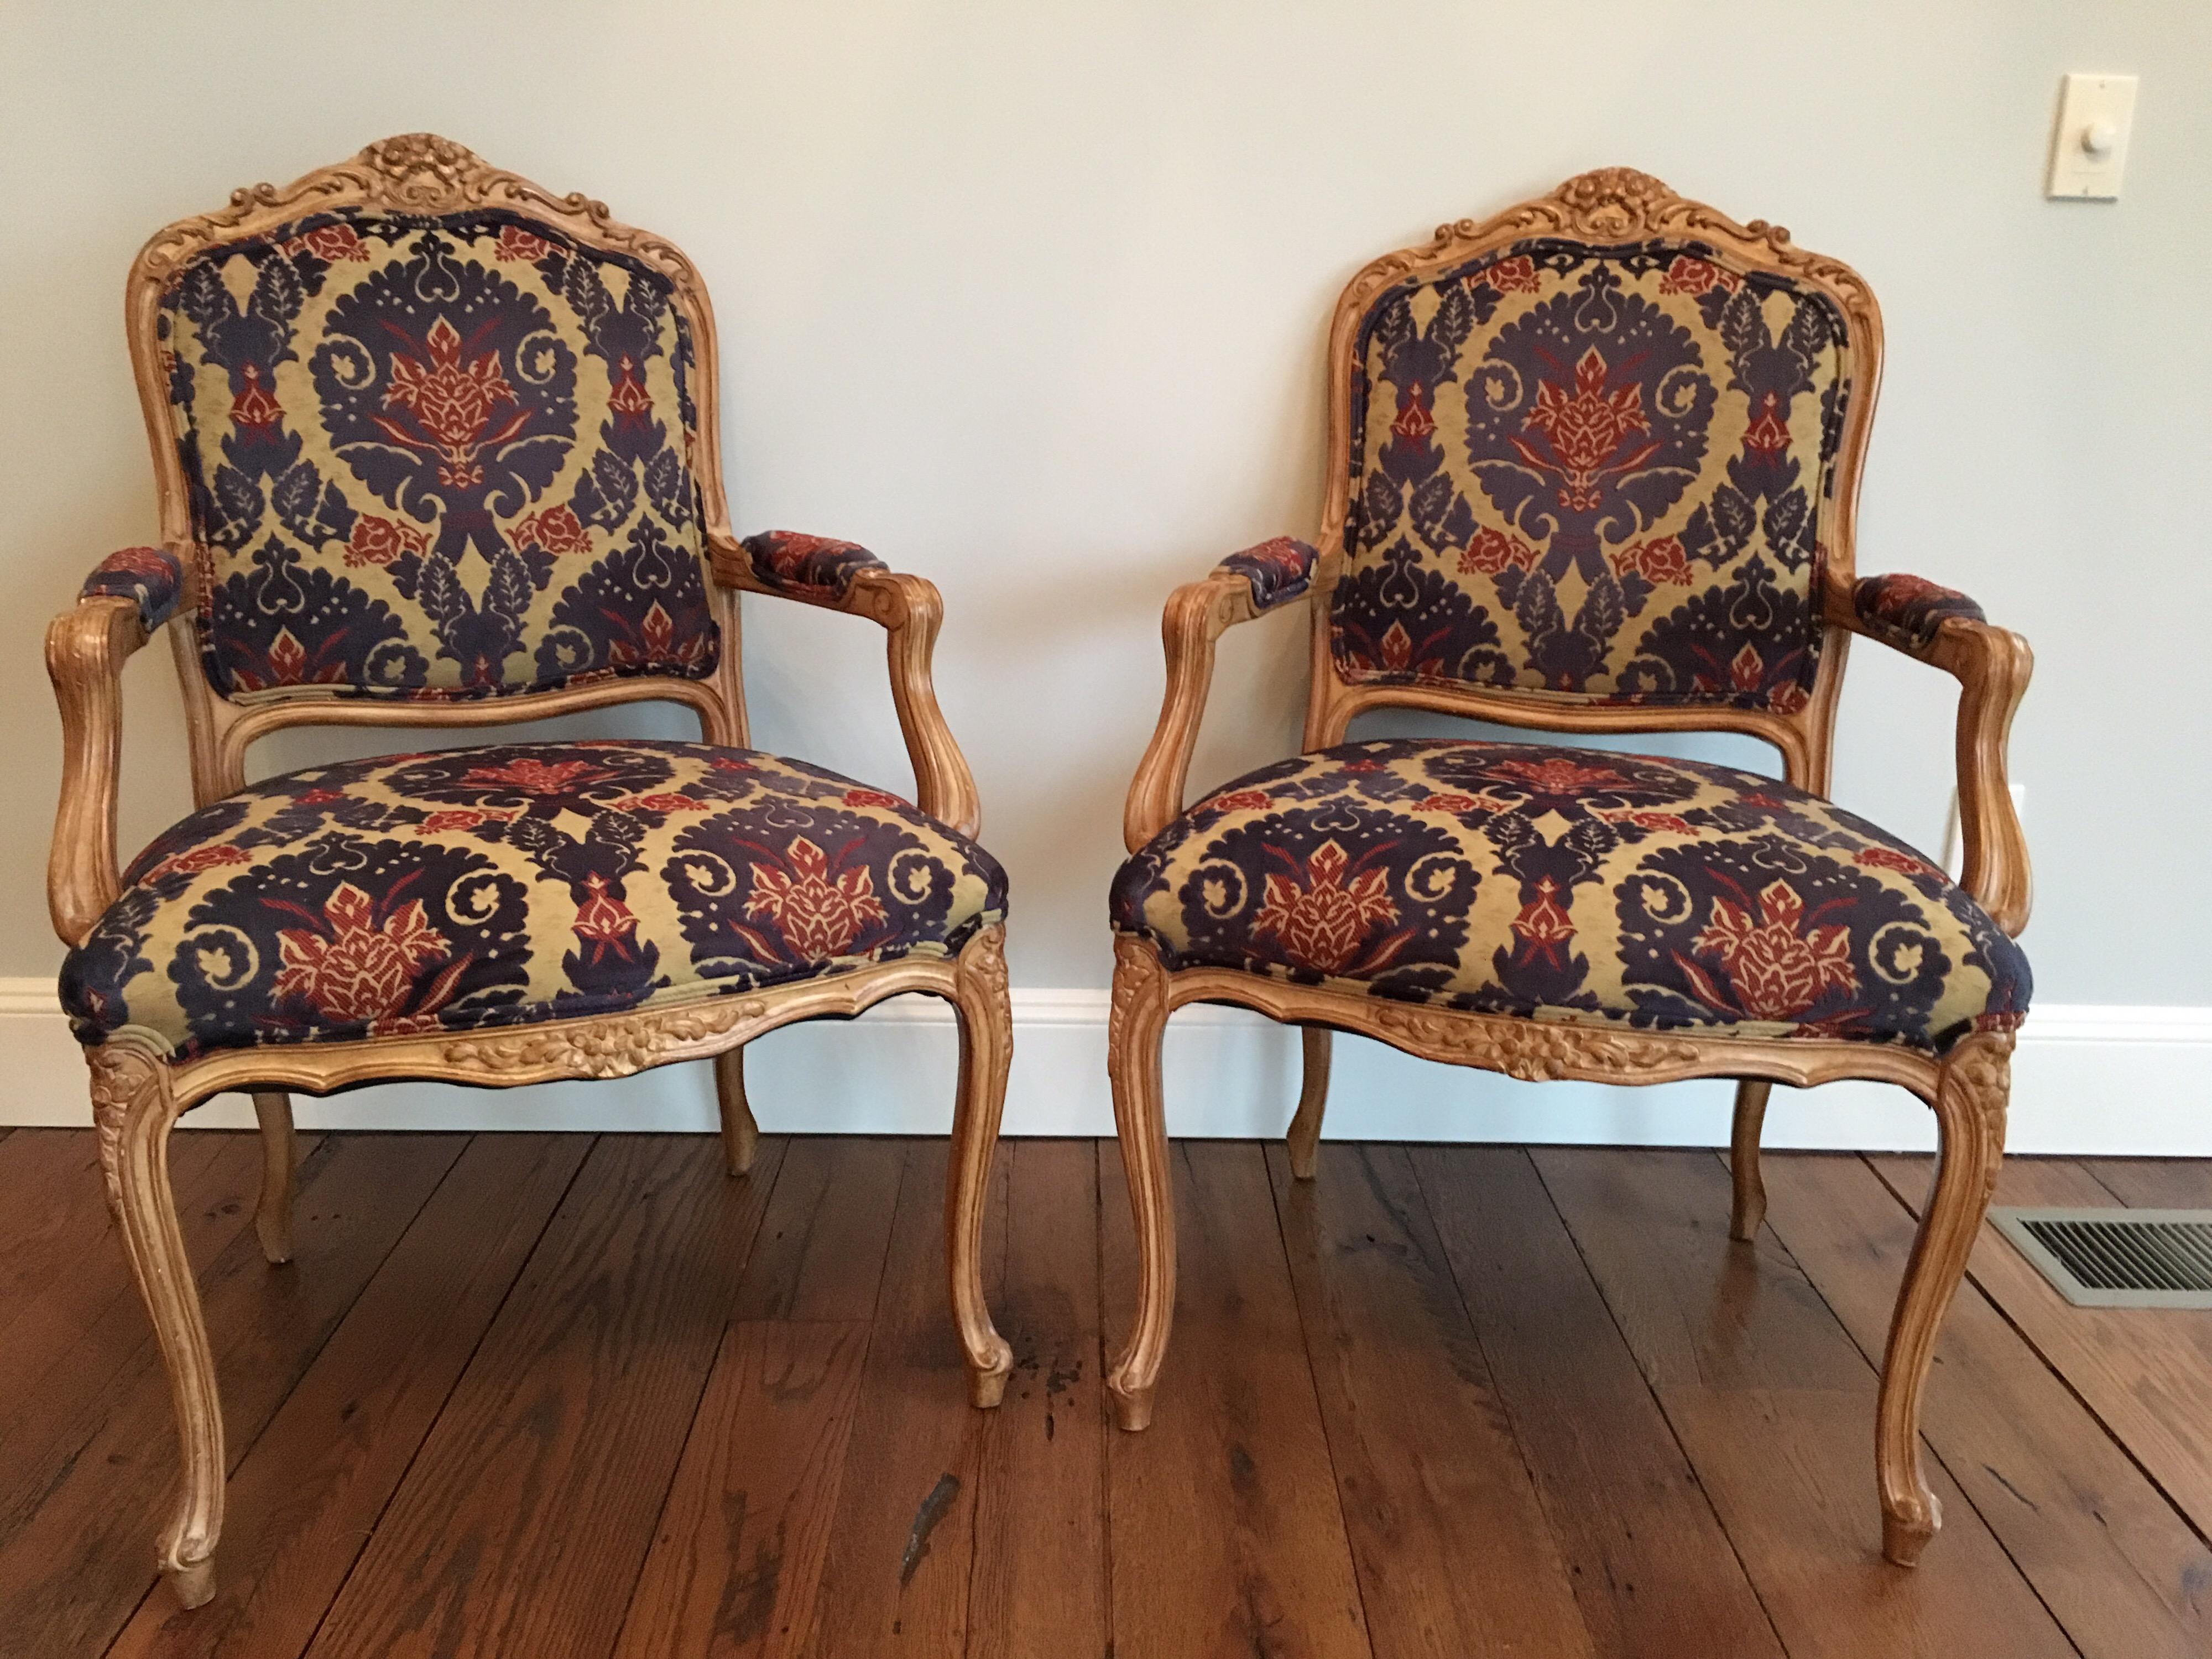 Paire de fauteuils de style Louis XVI recouverts d'un tissu en velours coupé. Motif de feuillage et de coquillage sculpté dans la partie supérieure. Très bon état. Deux petites taches d'encre sur le siège d'une chaise.